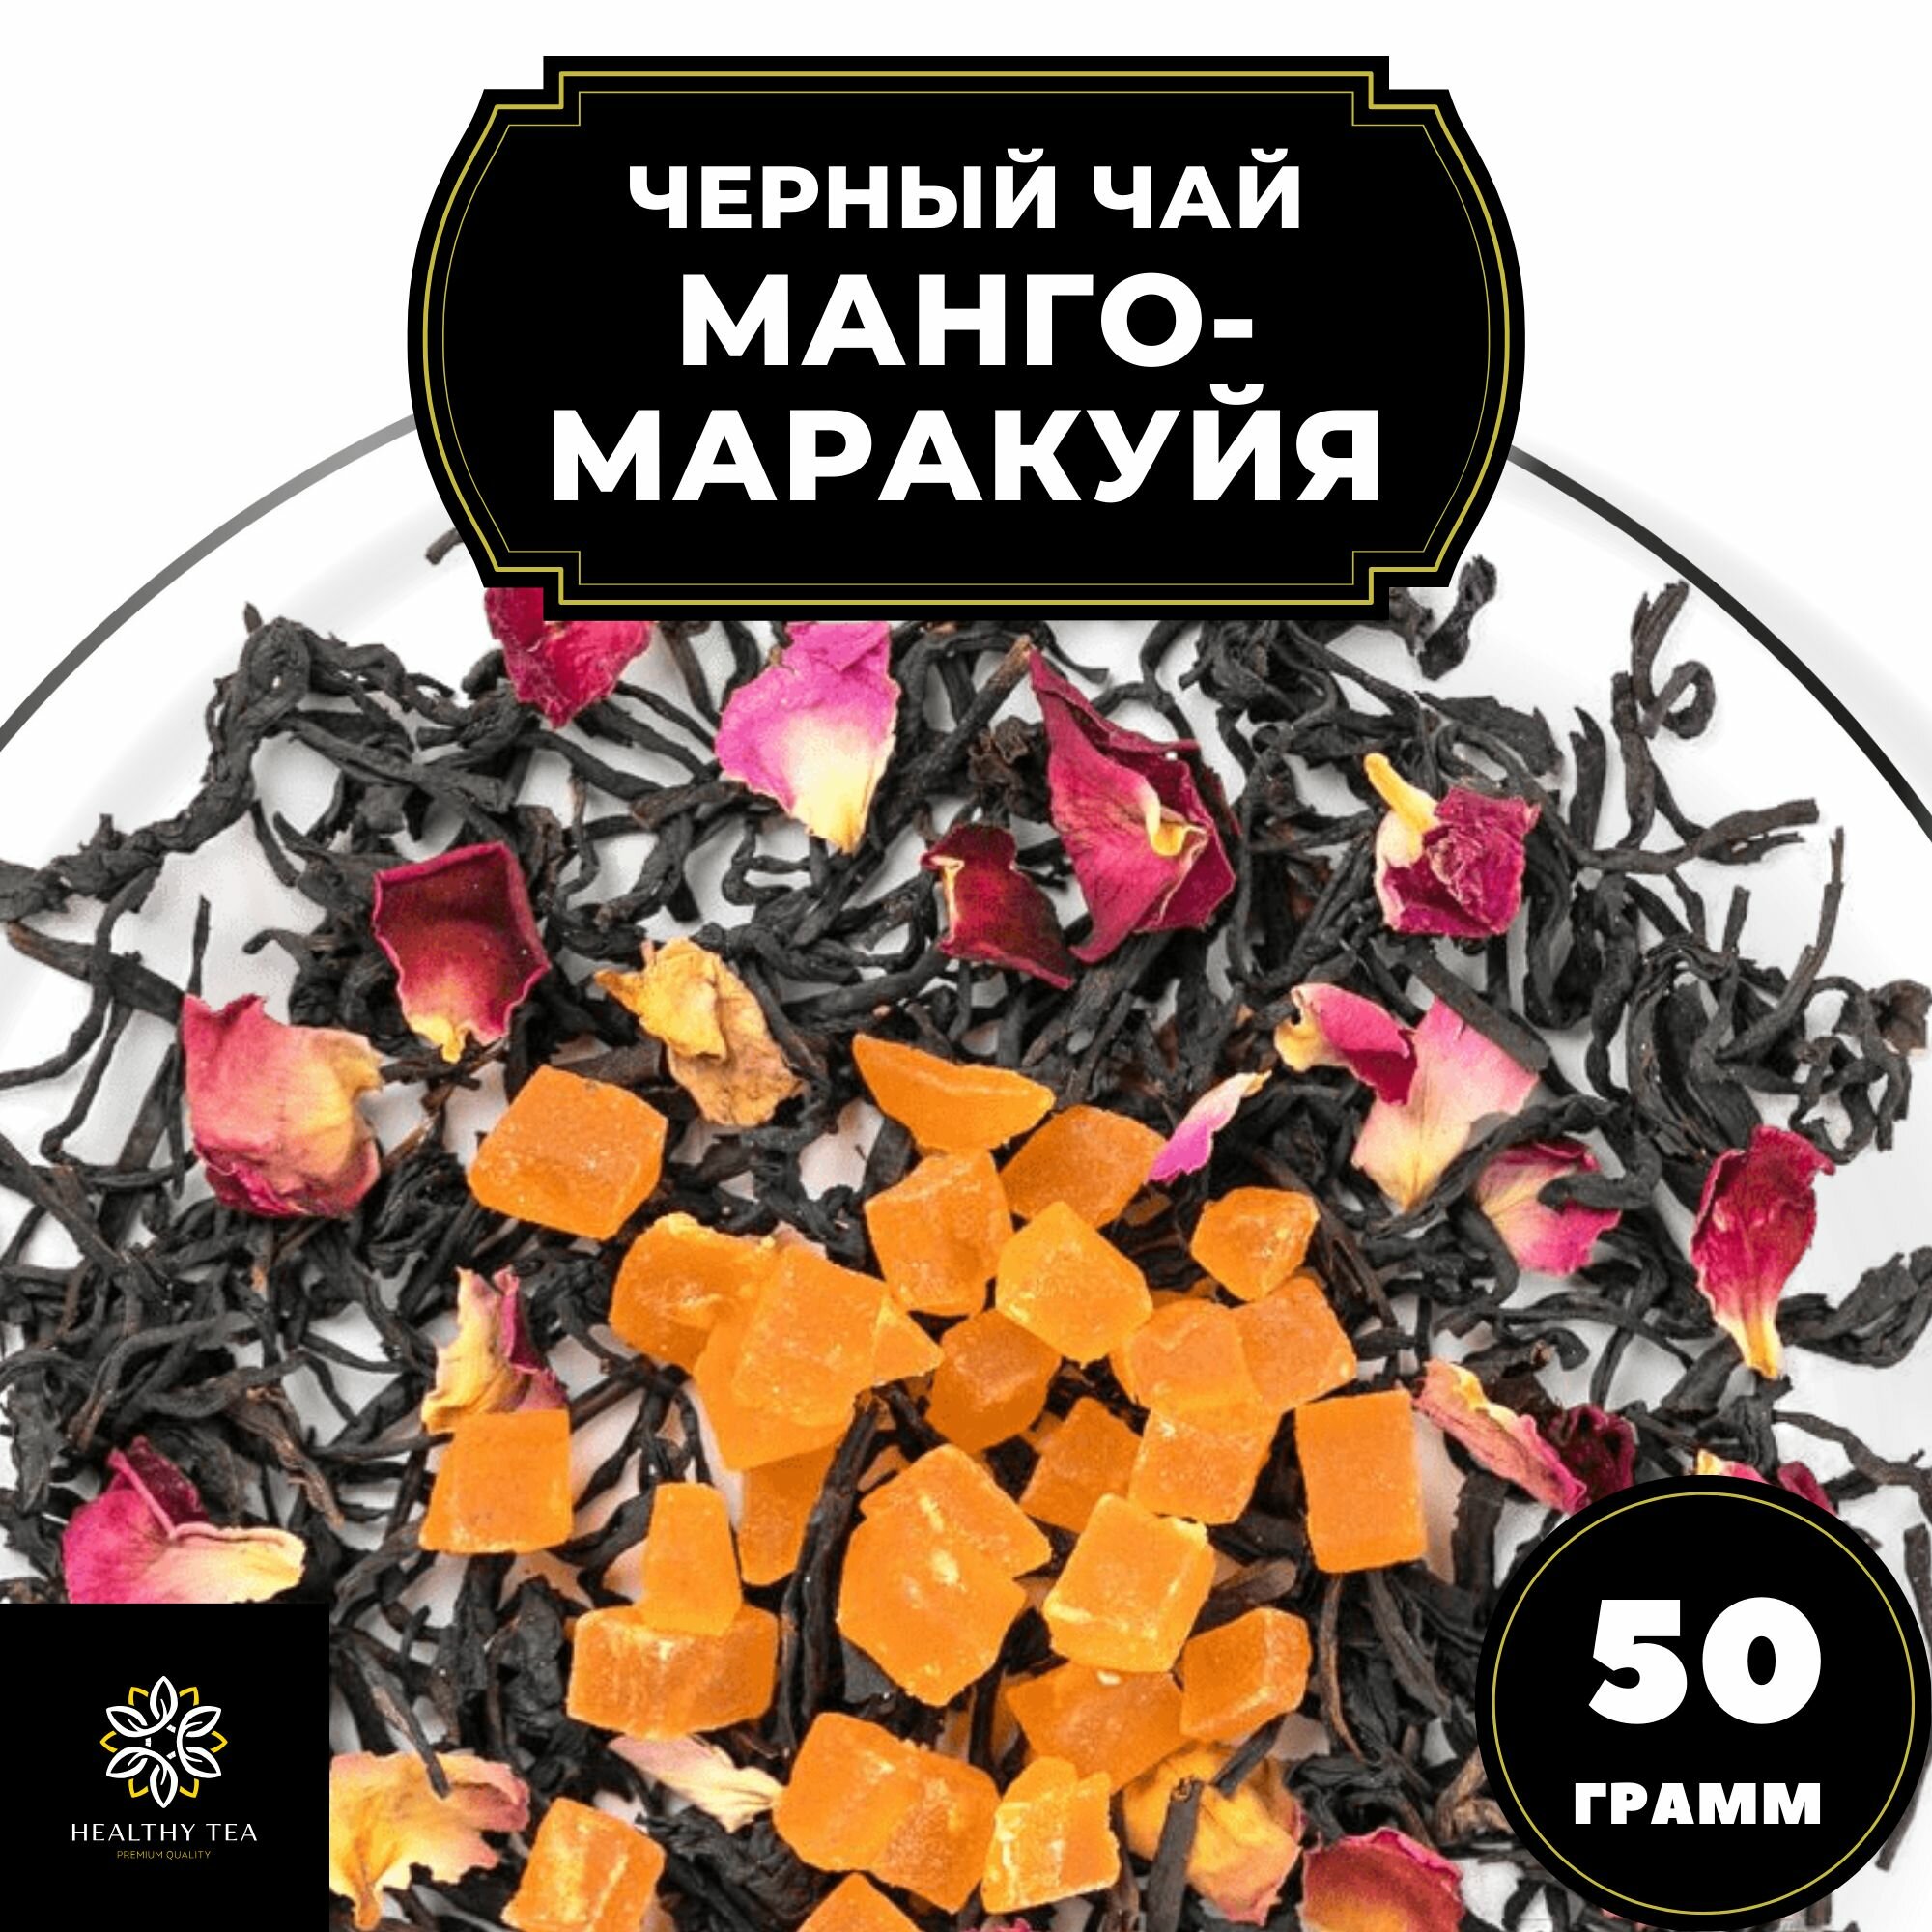 Индийский Черный чай с ананасом и розой "Манго-Маракуйя" Полезный чай / HEALTHY TEA, 50 гр